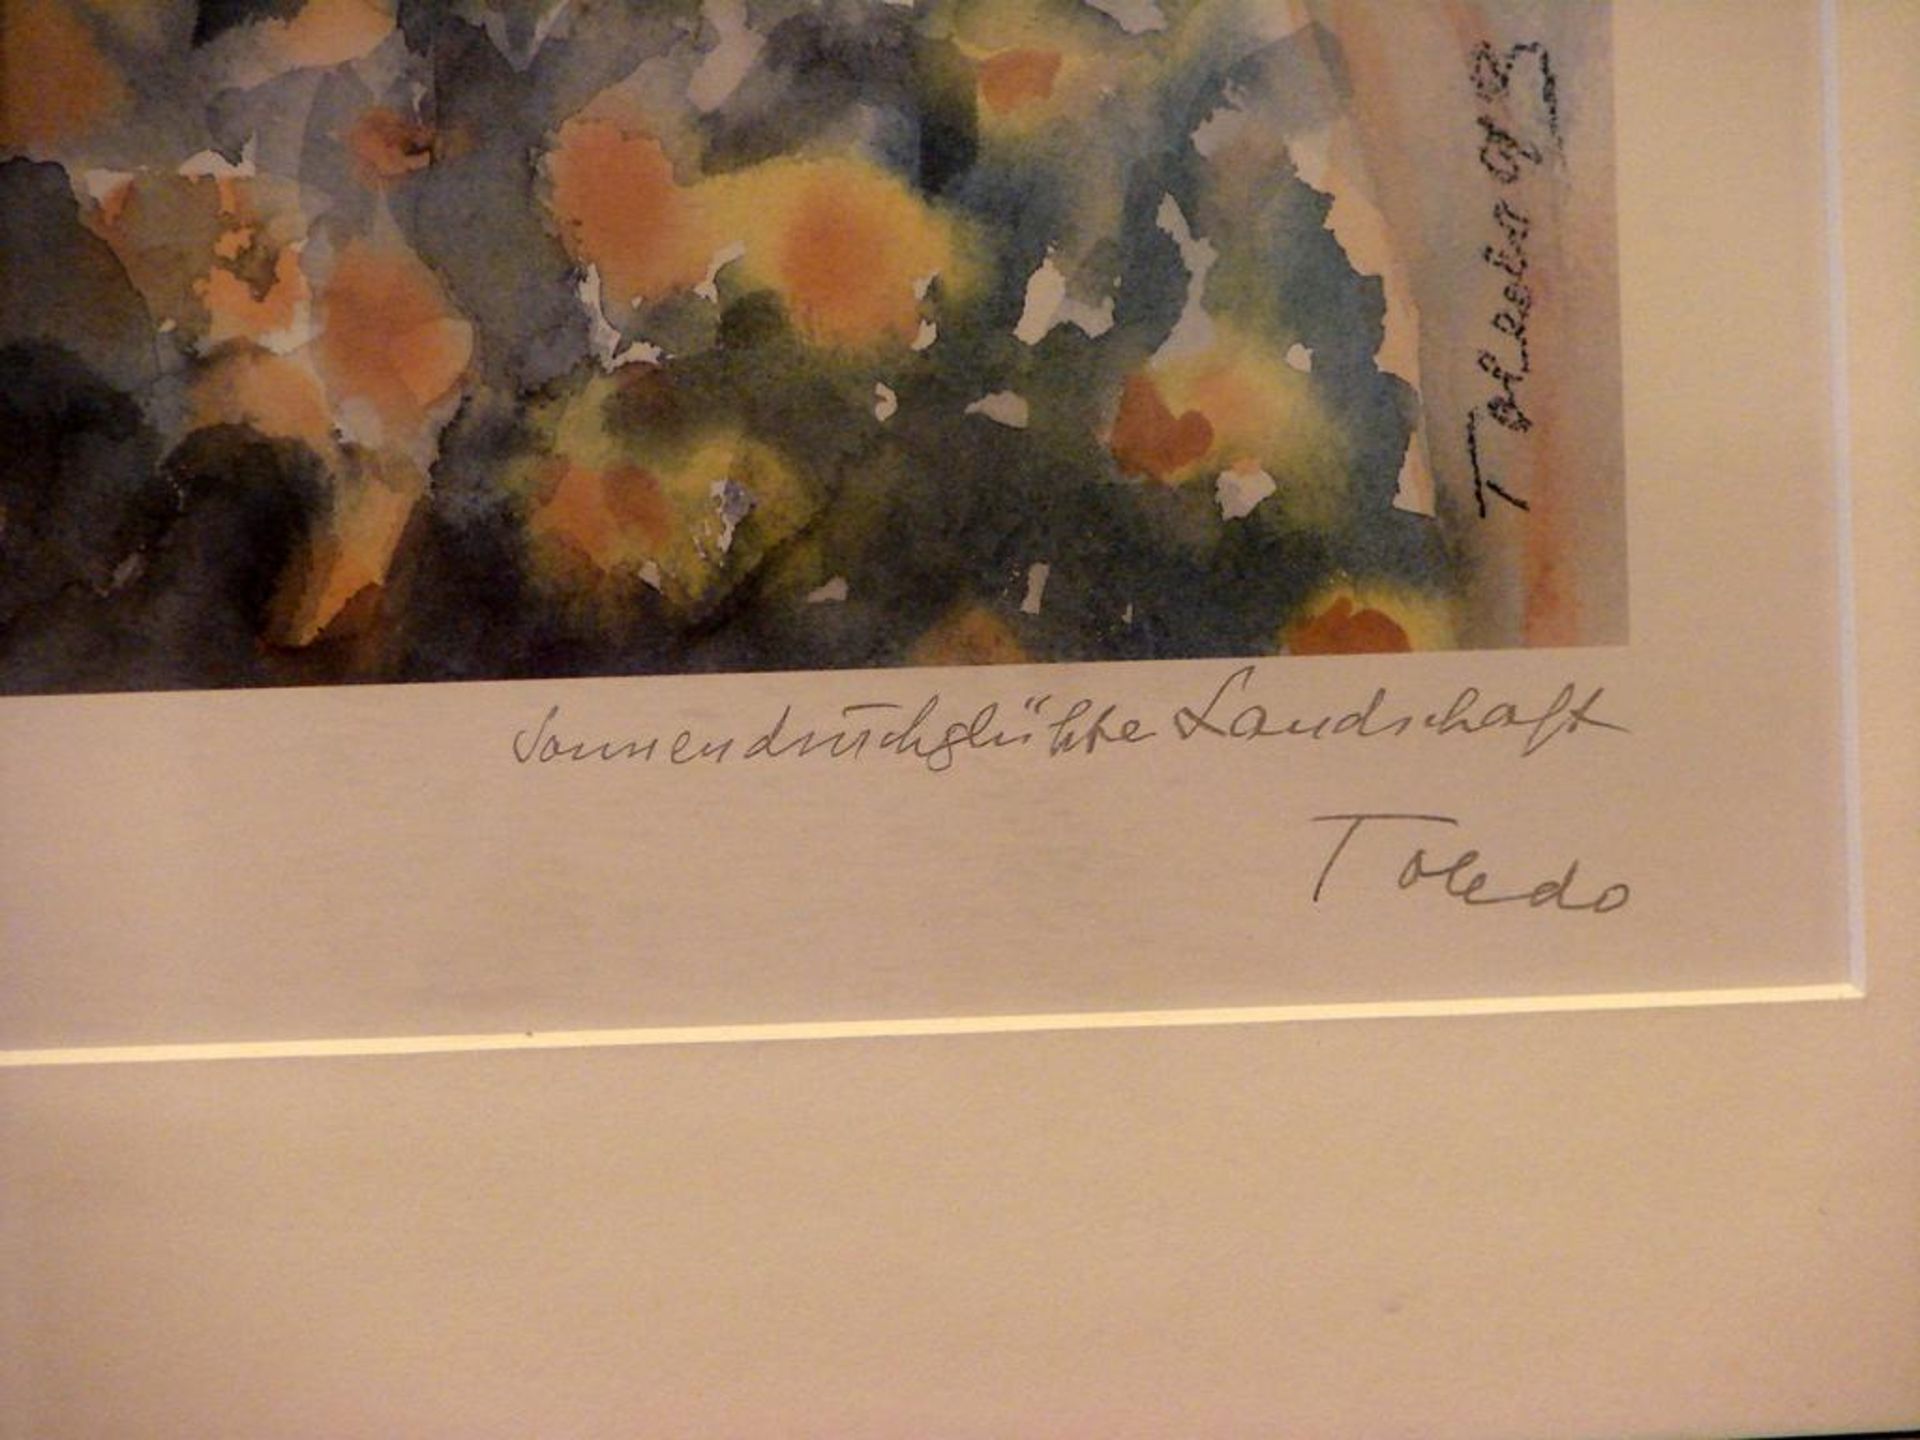 "Sonnendurchglühte Landschaft", Druck, bezeichnet Toledo, ca. 63x50 cm- - -22.00 % buyer's premium - Image 2 of 2